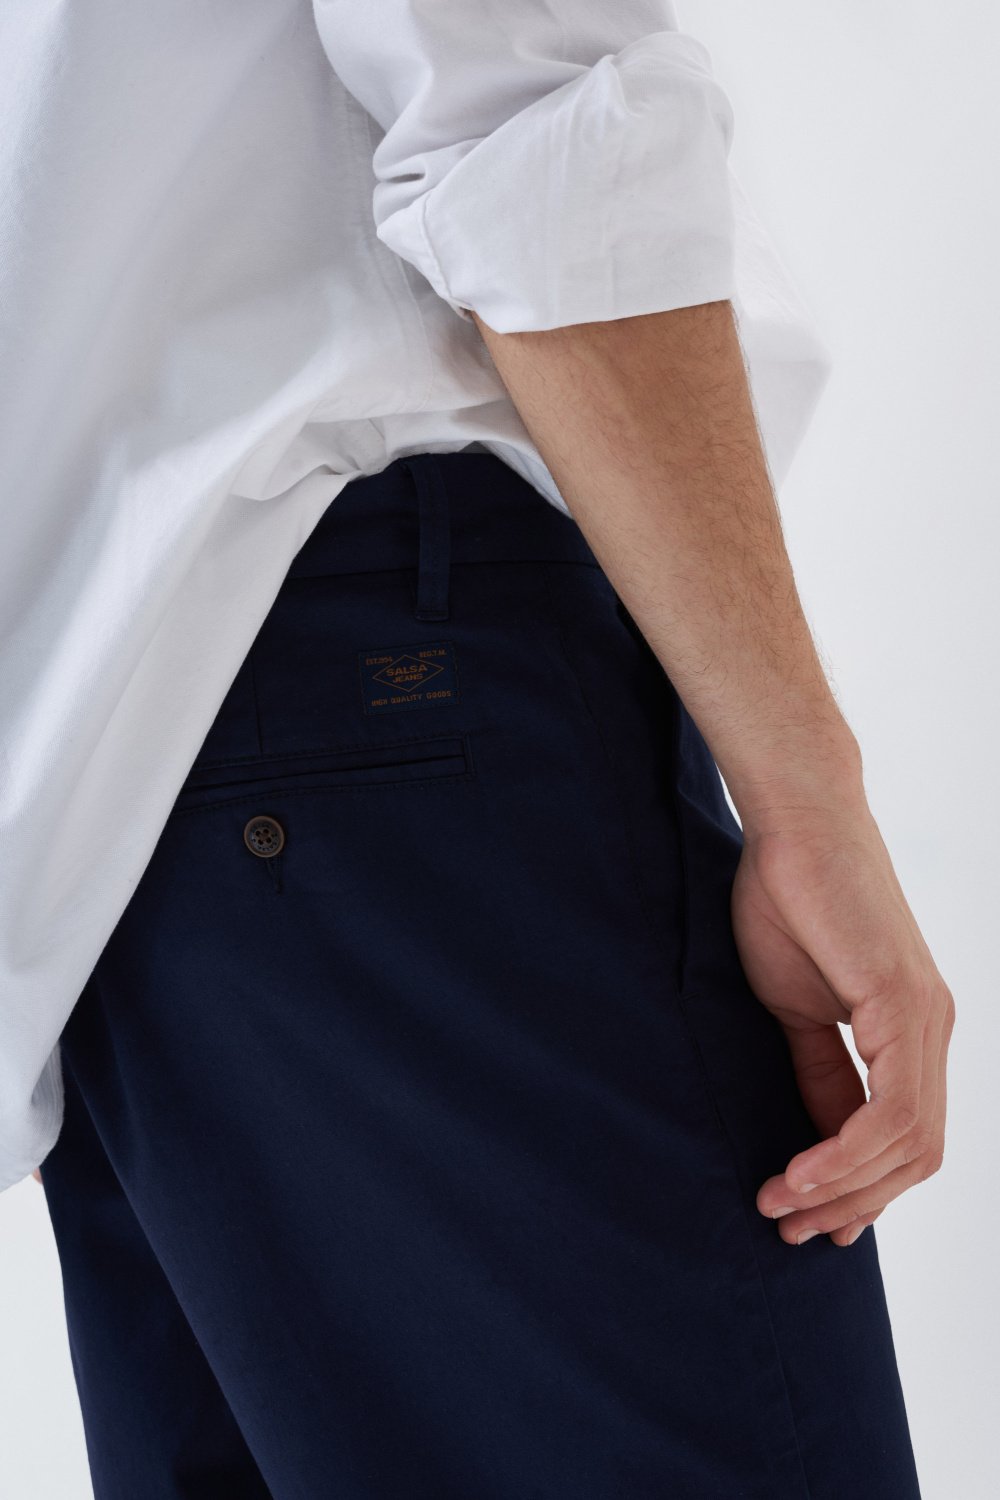 Pantalones cortos Chino de color azul oscuro - Salsa